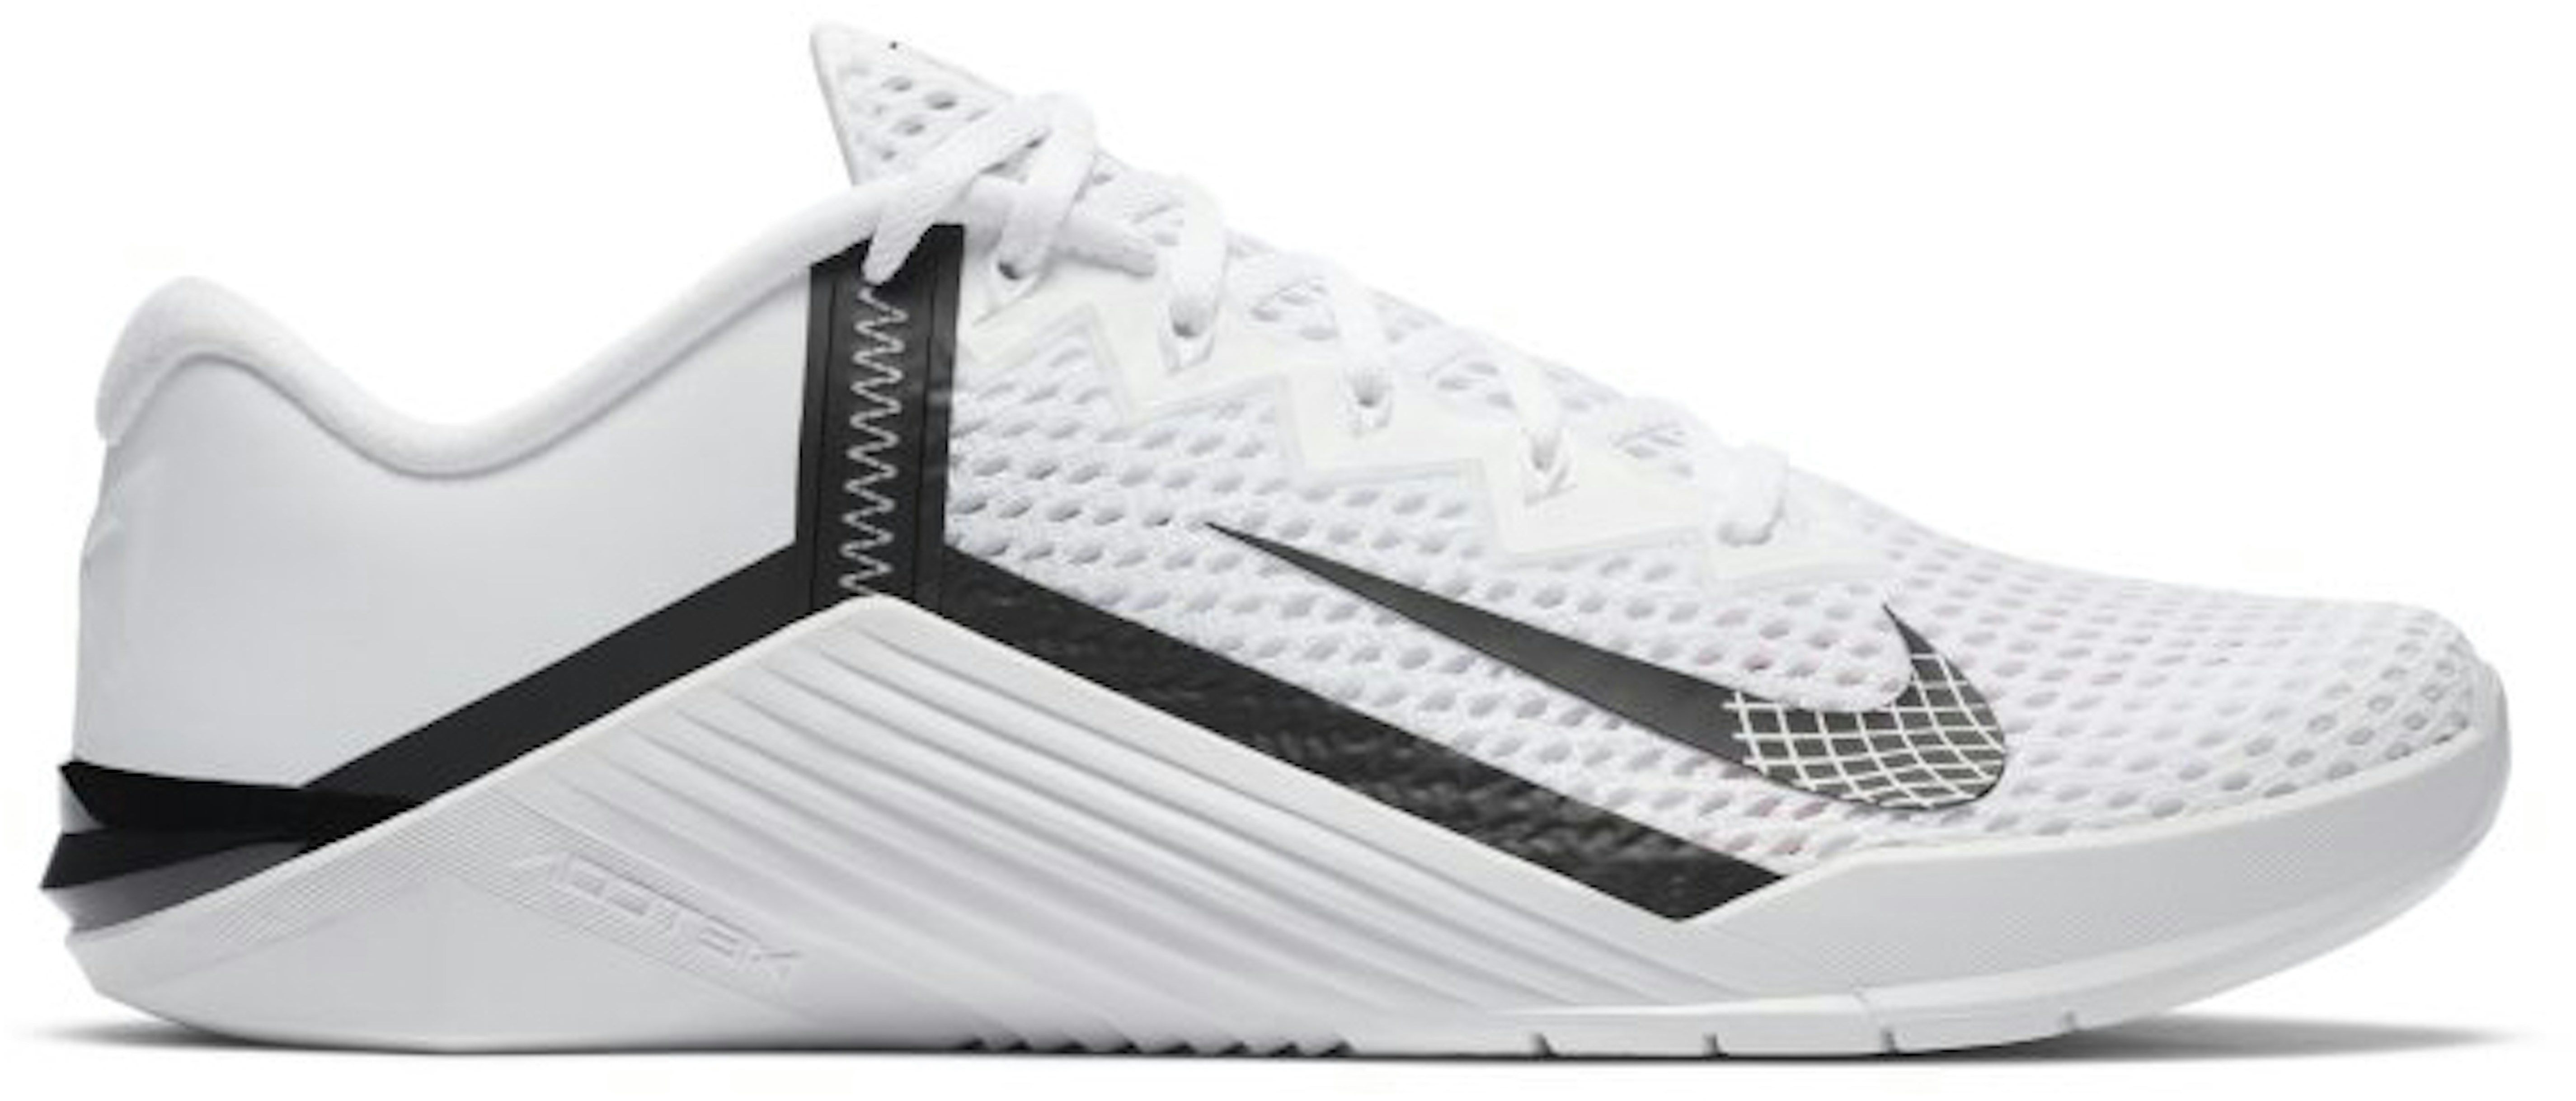 Nike Metcon 6 White Black - CK9388-100